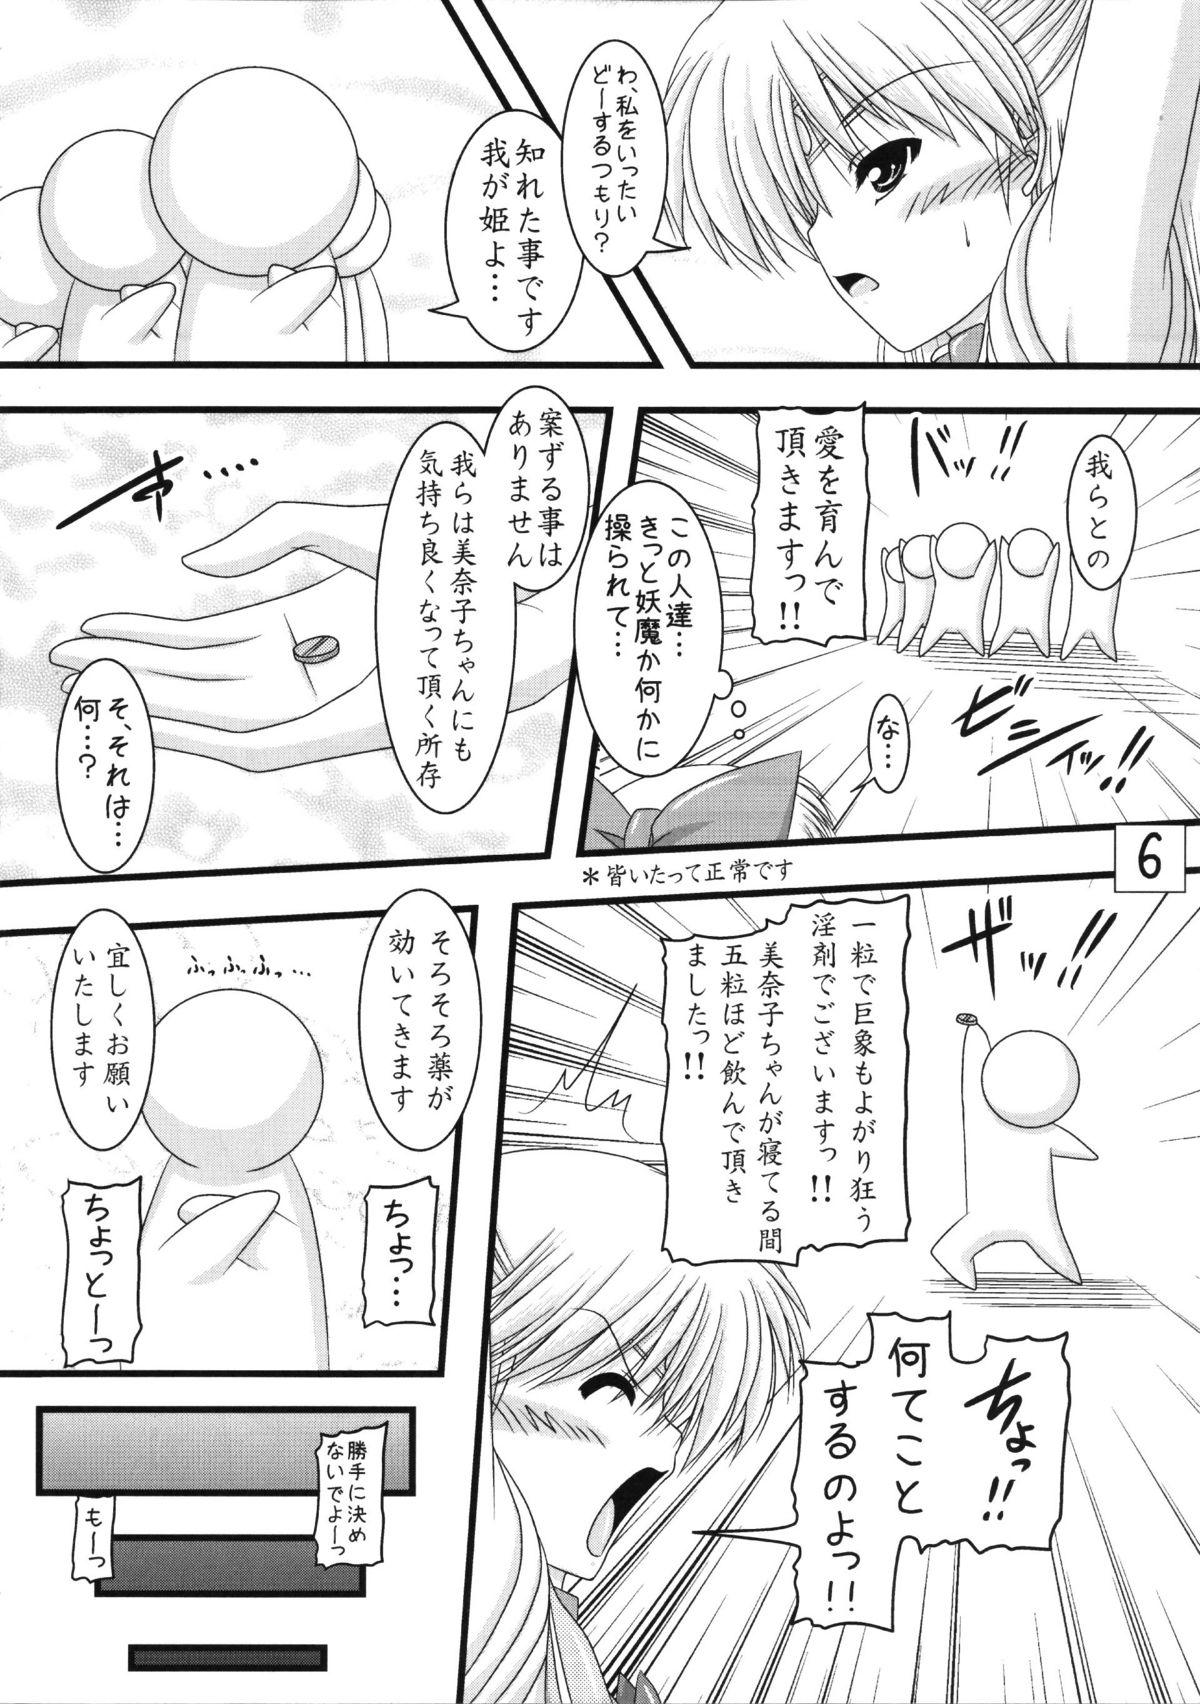 Couple Sex Kanaboshi-san jikandesuyo - Sailor moon Cougar - Page 6